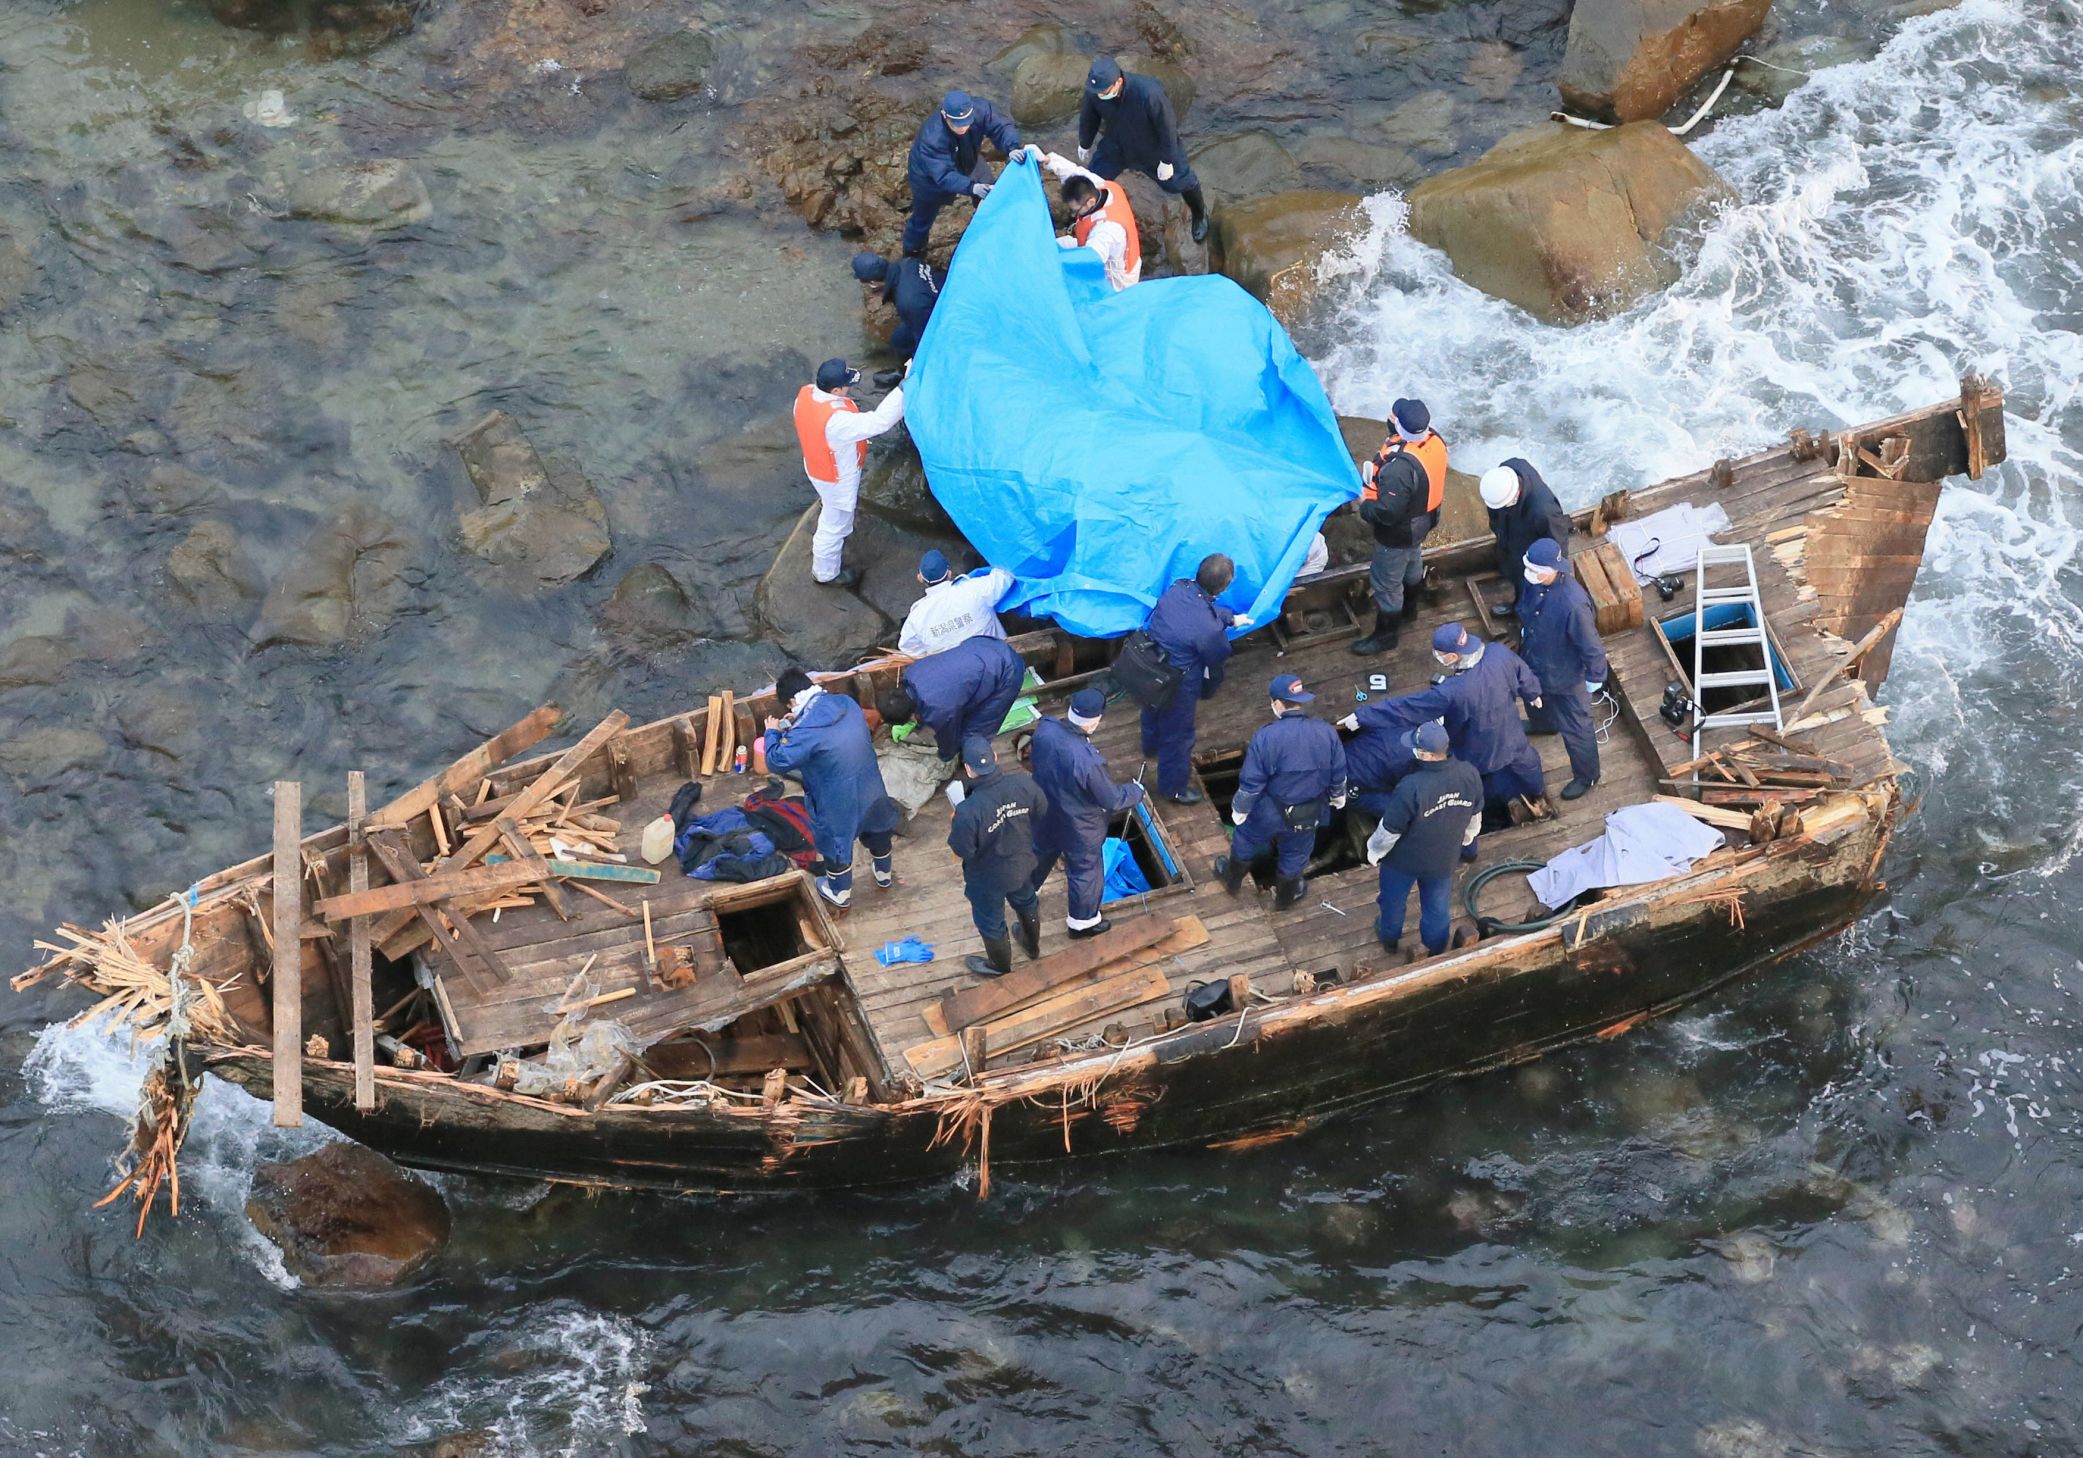 Oficiales de policía japoneses investigan un bote de madera marcado con letras coreanas en la isla de Sado, Japón, el 28 de noviembre de 2012. Se encontraron cinco cuerpos en el bote, que fue arrastrado por las rocas de una playa en la isla. (Kyodo a través de Reuters/archivo)